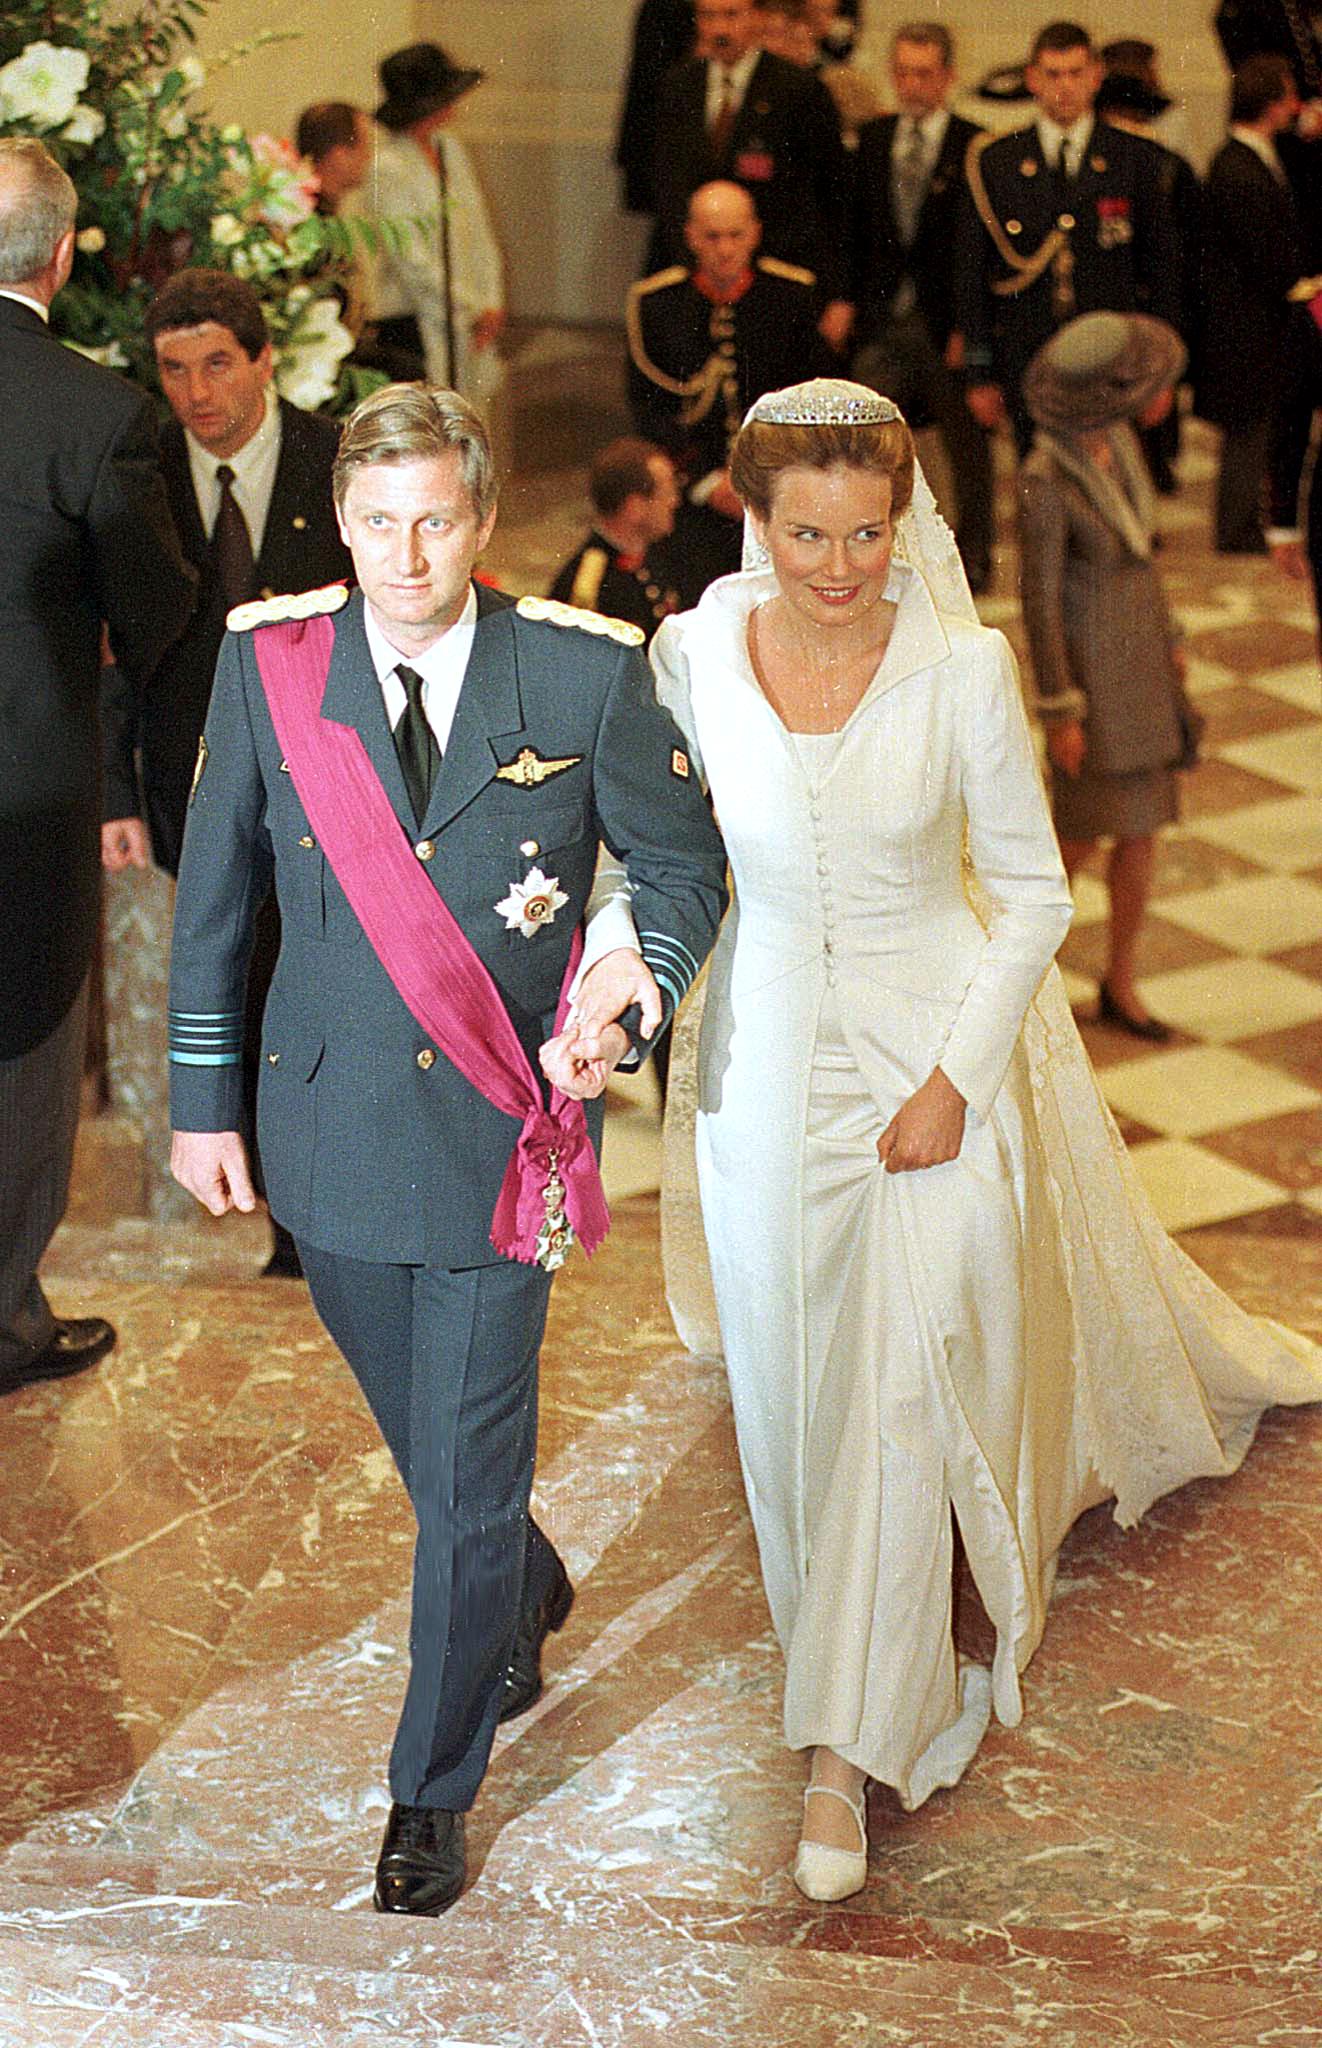 Less be a belga királyi család életébe: bemutatjuk Matildot, a logopédusból lett belga királynét